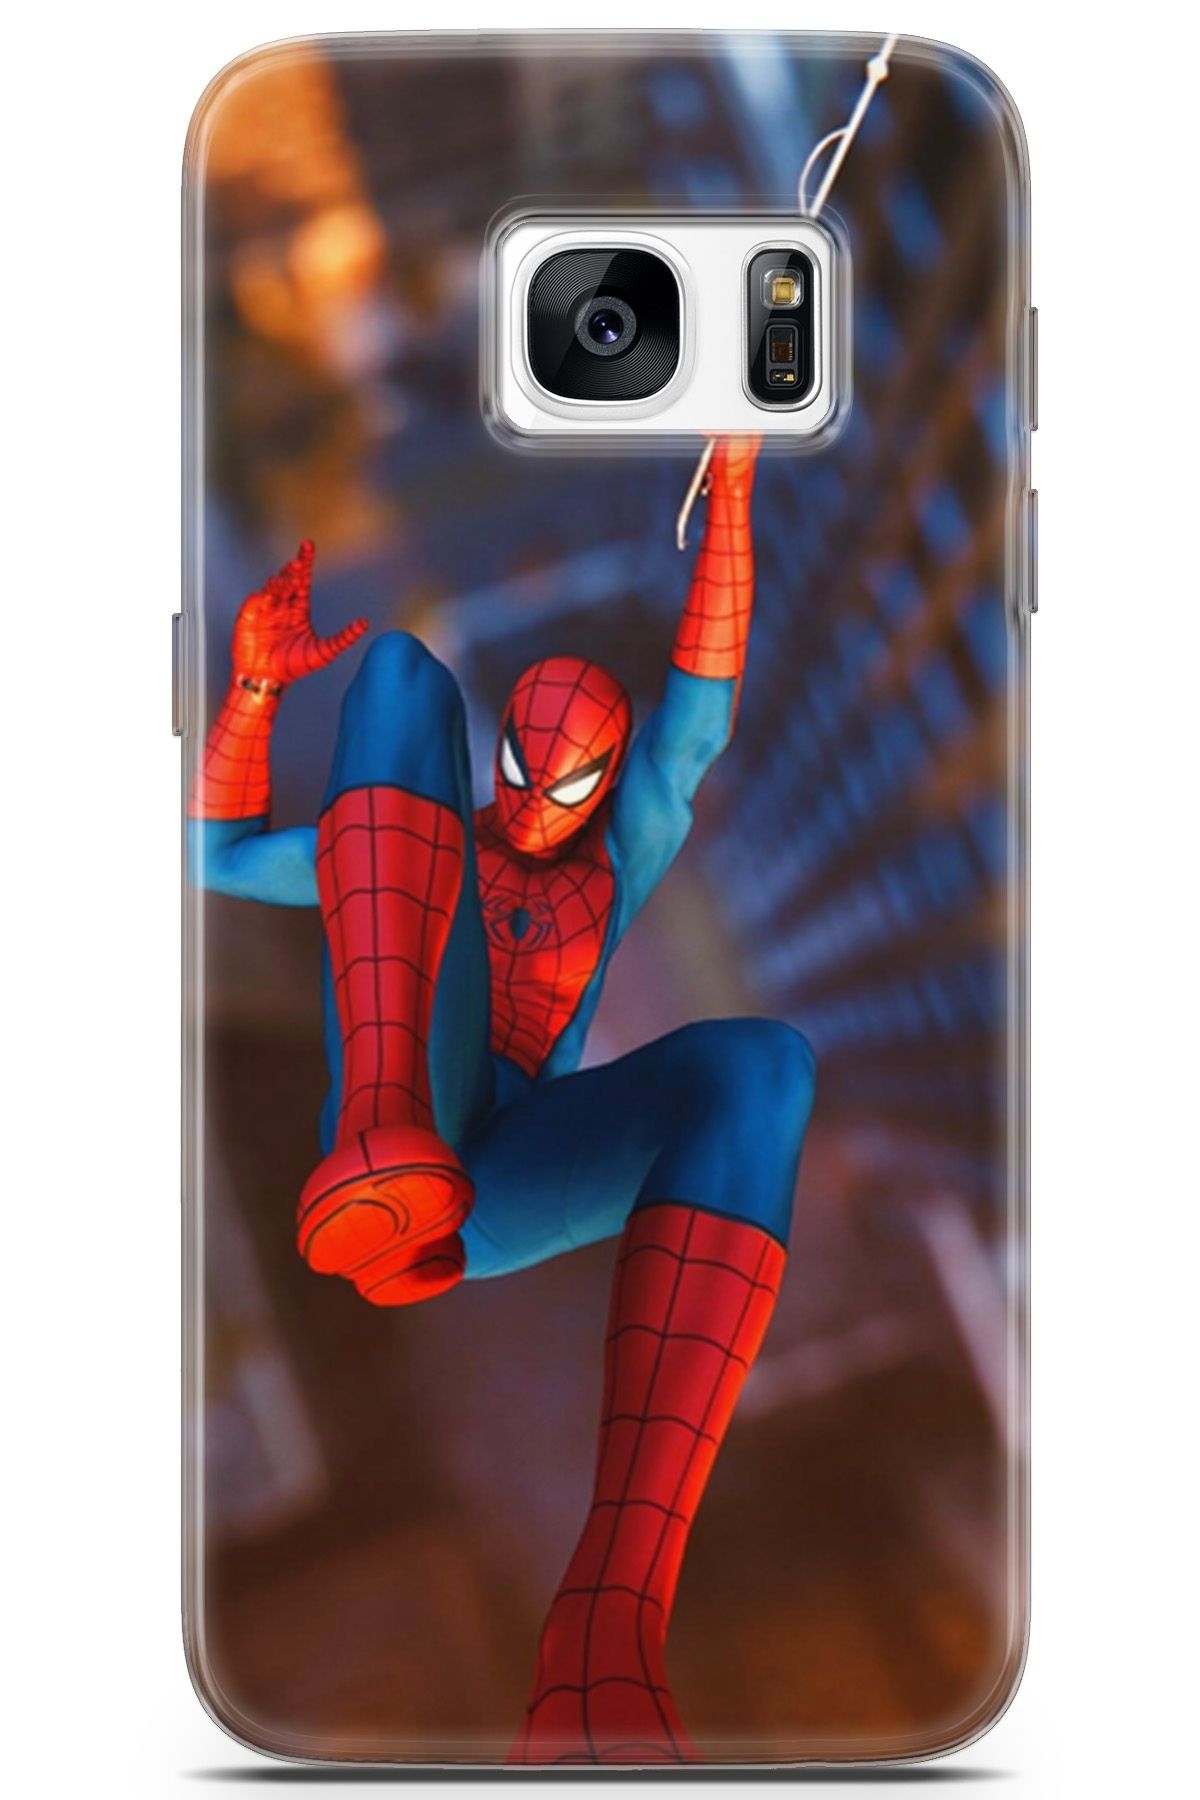 Lopard Samsung Galaxy S7 Uyumlu Kılıf Opus 20 Spiderman Renkli Kılıf Gradient